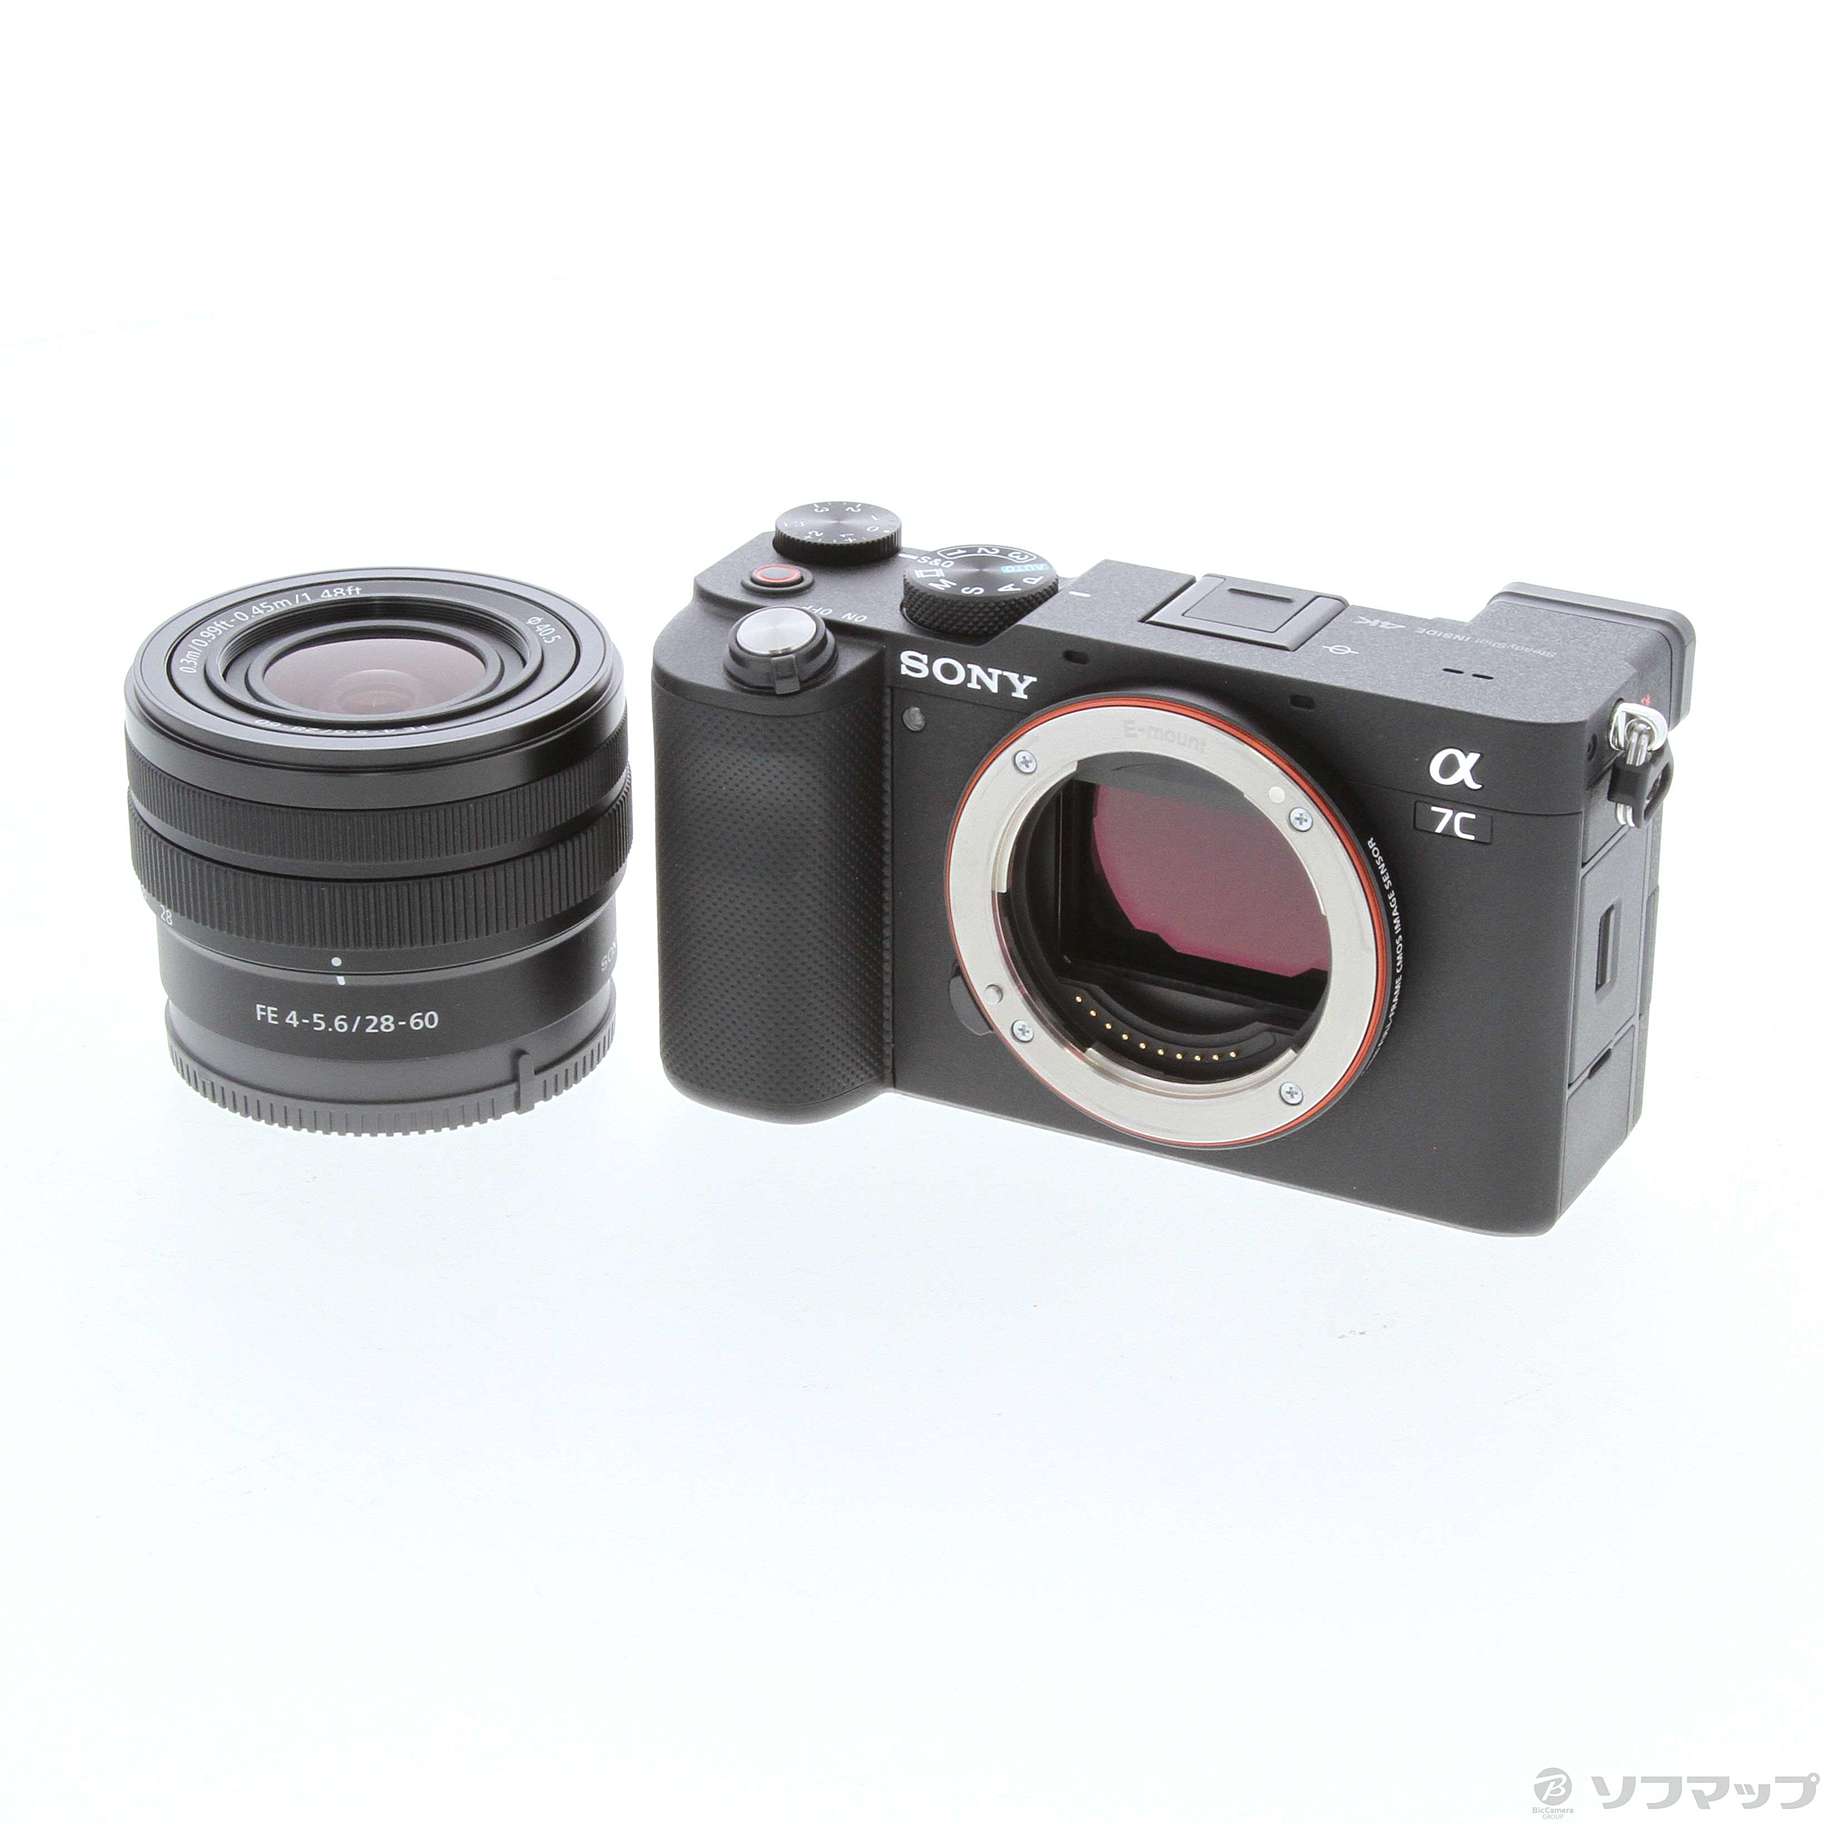 決算特価商品 ILCE-7CL レンズキット【ブラック】 α7C SONY デジタルカメラ